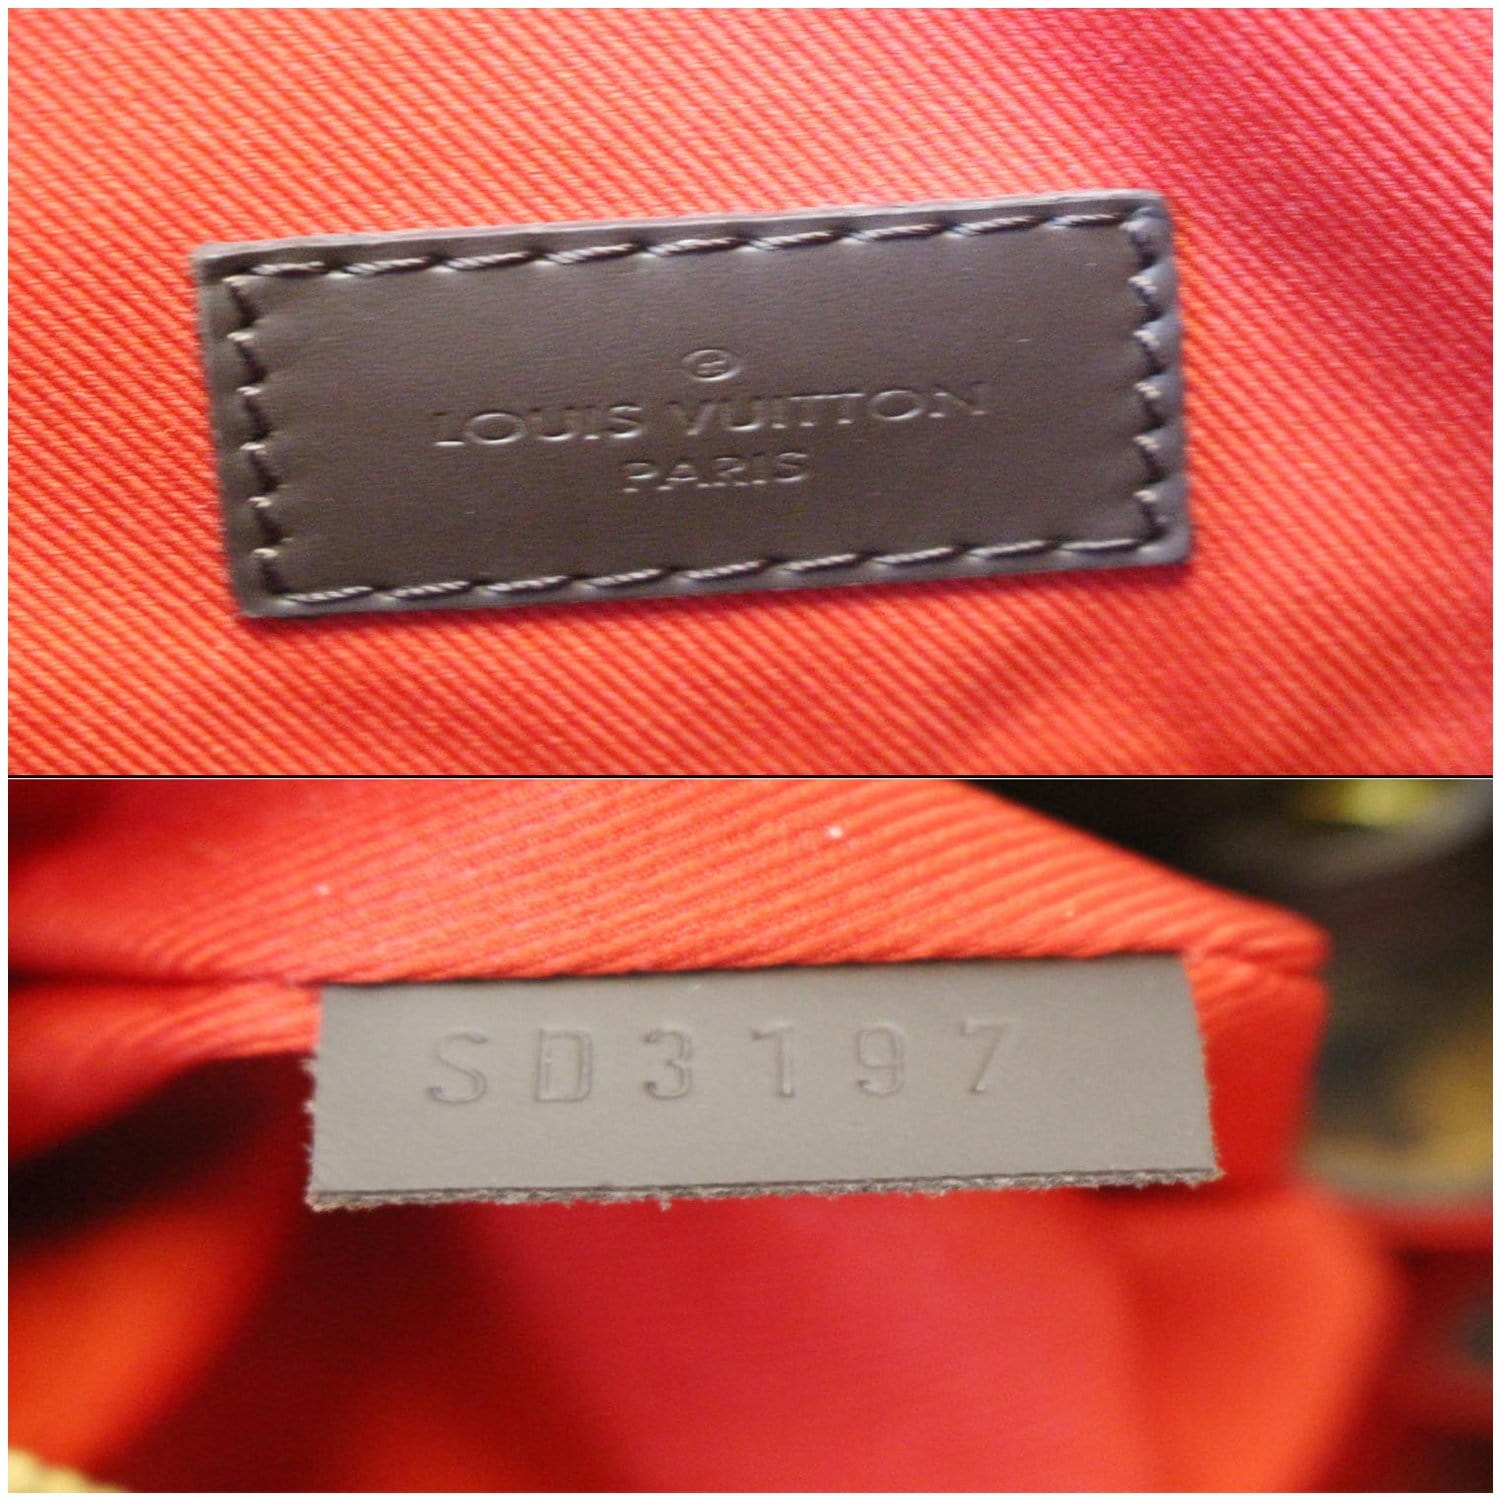 Louis-Vuitton-Damier-Graceful-MM-Shoulder-Bag-N44045 – dct-ep_vintage  luxury Store